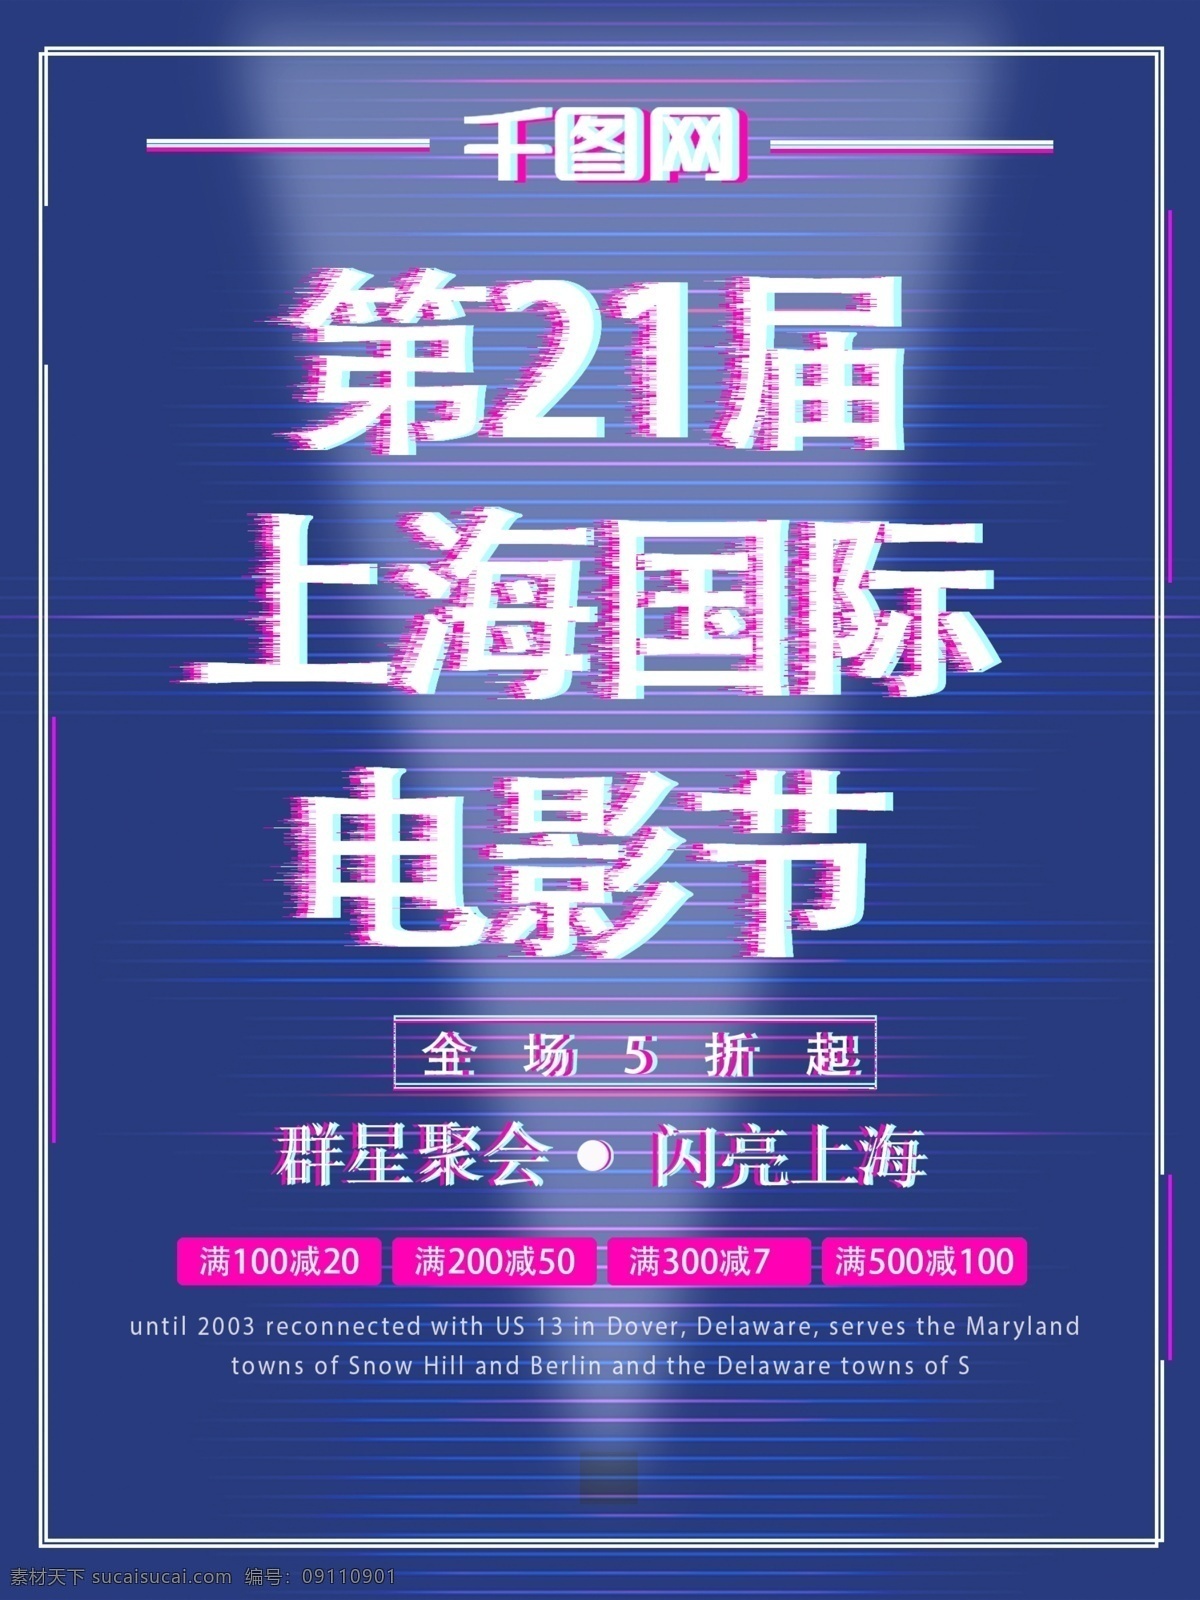 蓝色 抖 音 上海 国际电影节 节日 海报 国际 聚会 闪亮 登场 第21届 电影节 群星